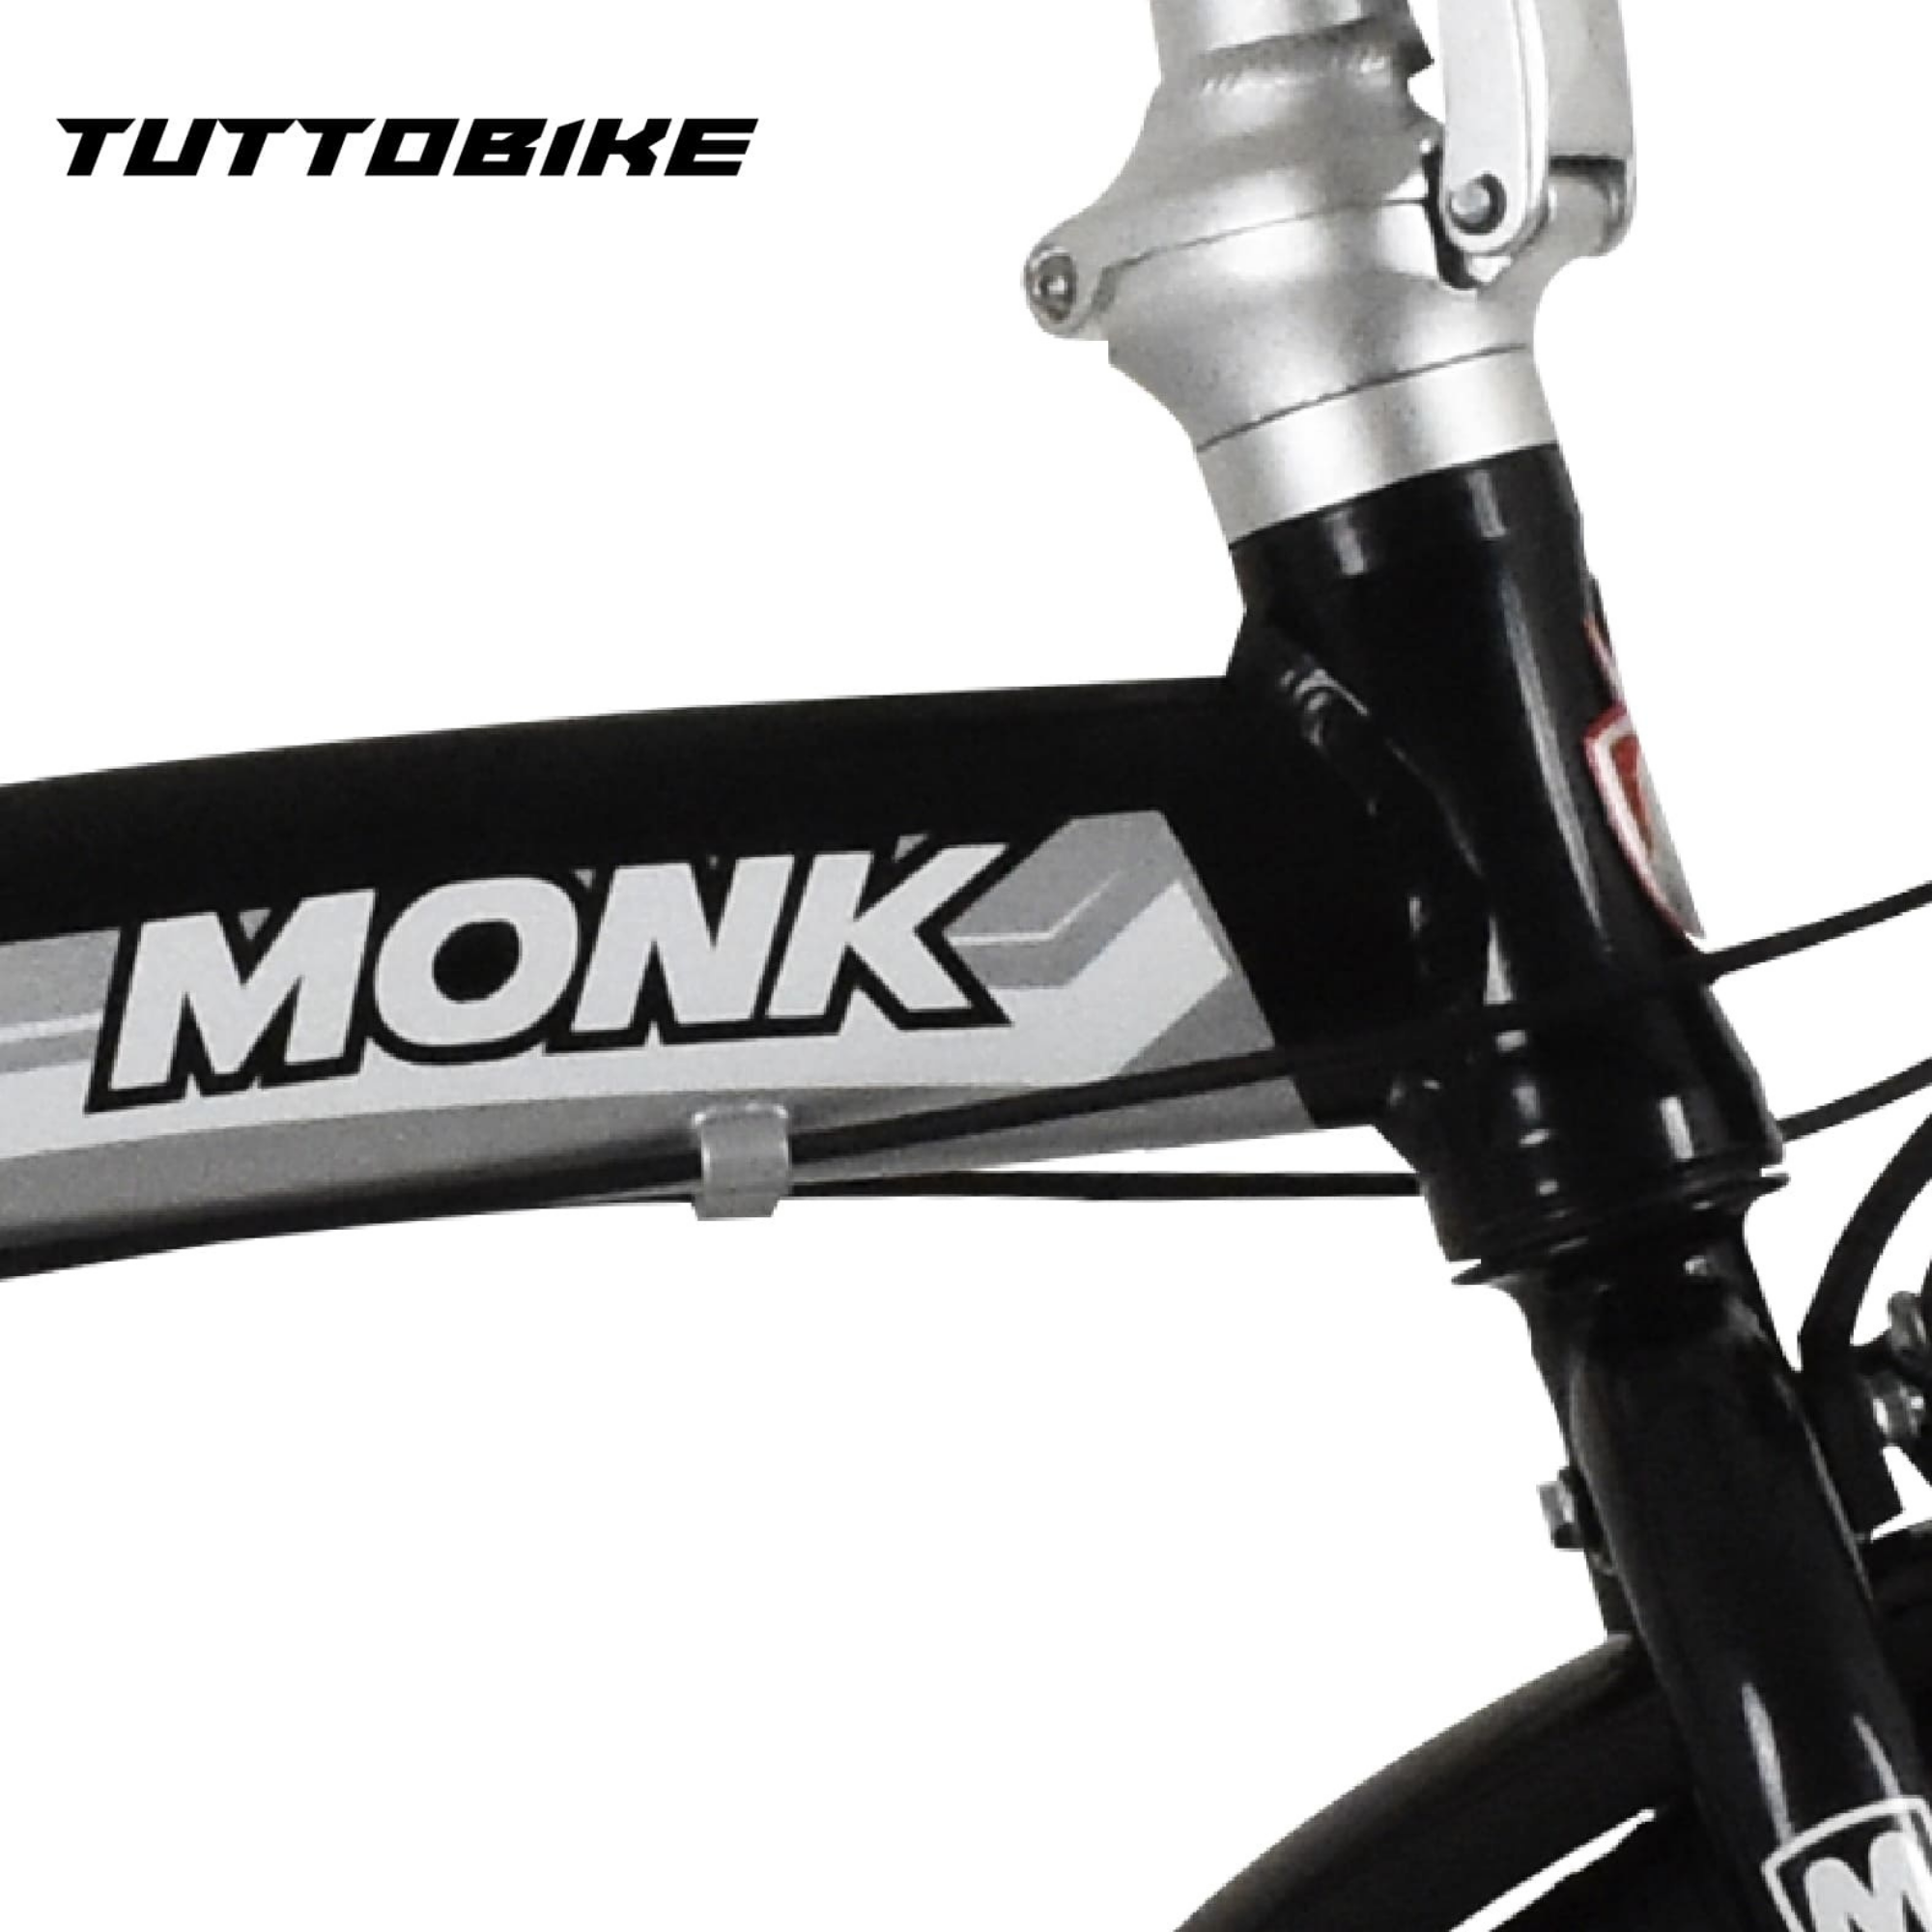 Bicicleta Urbana Plegable Rodada 20 Monk Flink